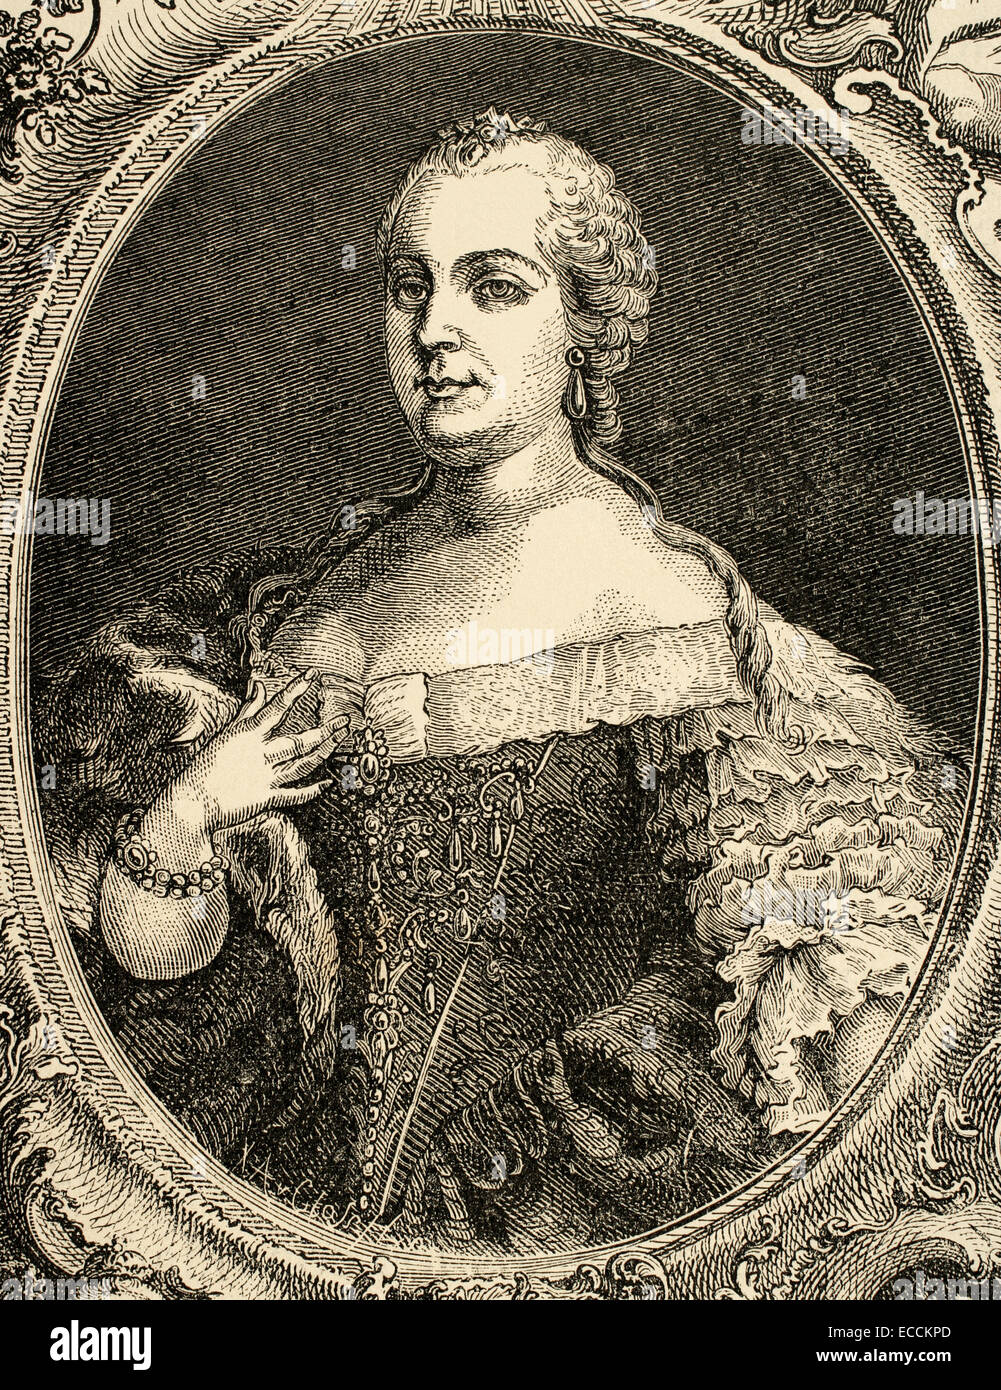 Maria Theresia (1717-1780), Erzherzogin von Deutschland, Königin von Ungarn und Böhmen. Porträt. Kupferstich, 1882. Stockfoto